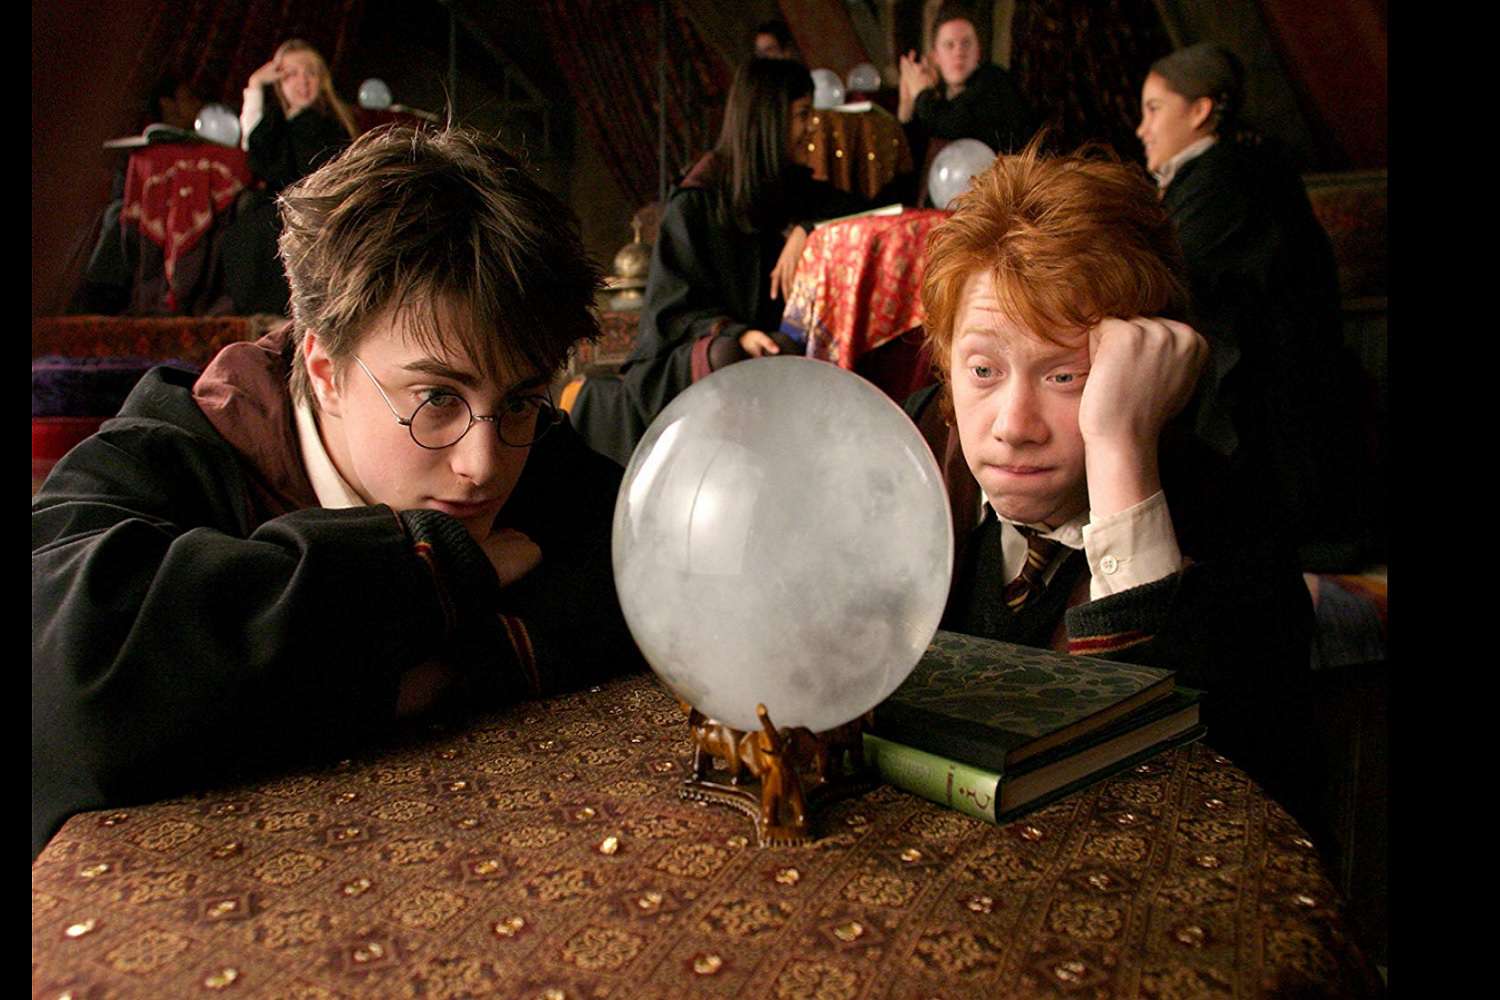 Screenshot scény z filmu Harry Potter a vězeň z Azkabanu.  Postavy, Harry Potter a Ron Weasley, hledí na křišťálovou kouli.